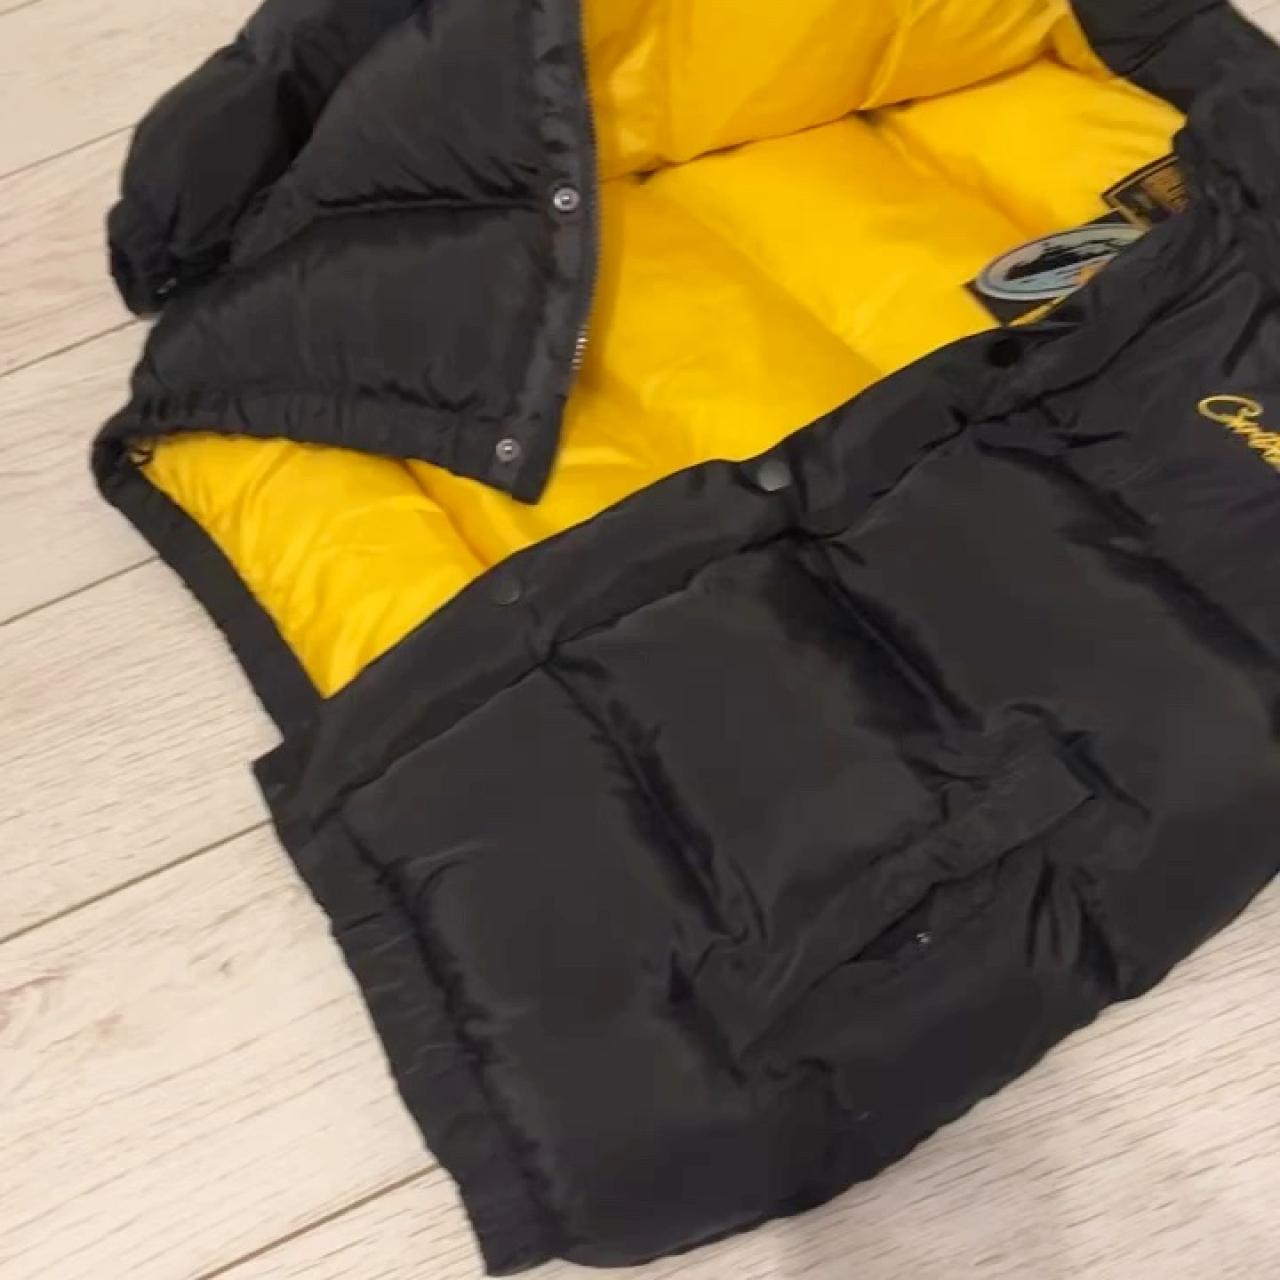 Corteiz Men's Black and Yellow Jacket | Depop